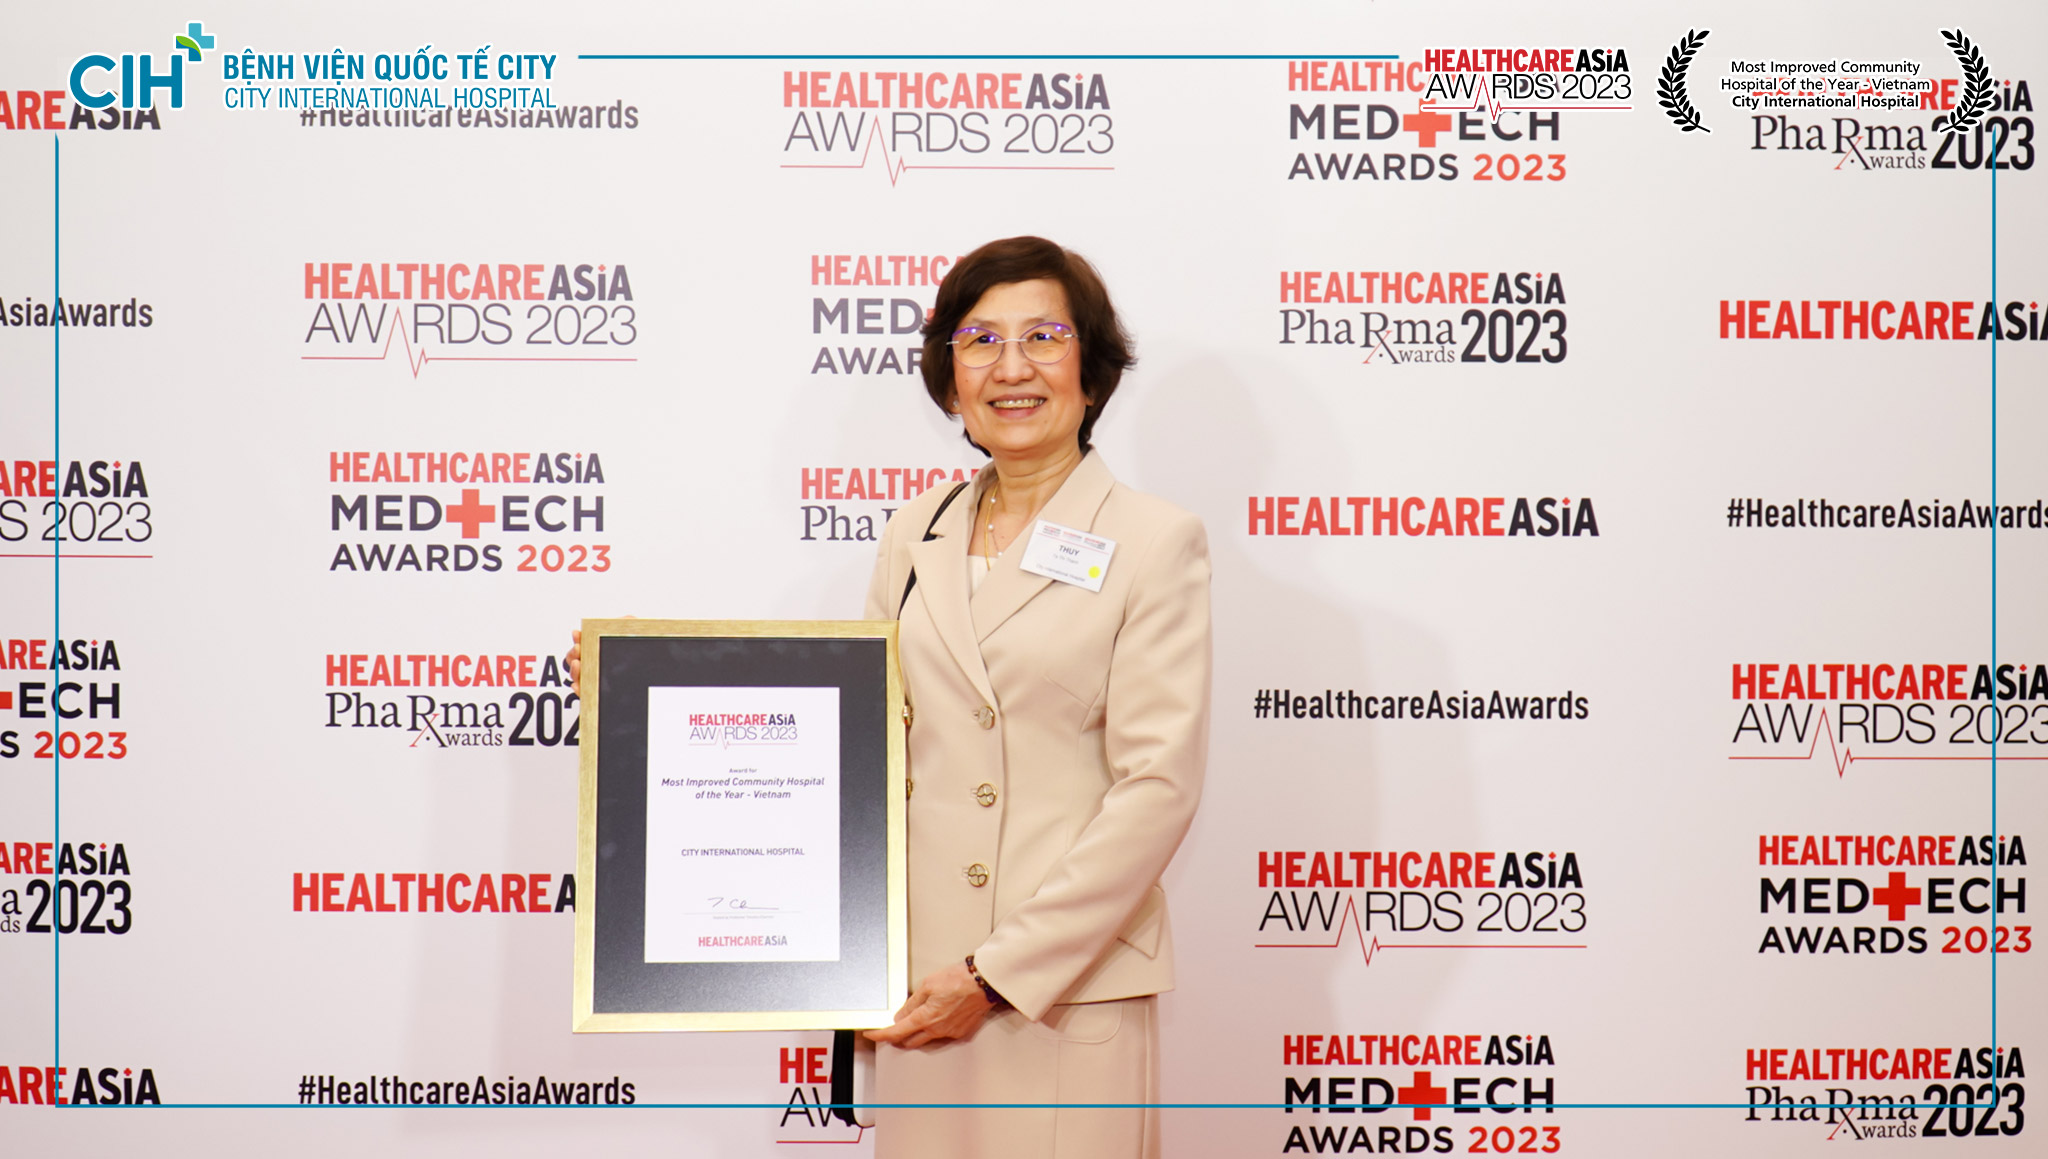 Hai Bệnh viện đa khoa tư nhân đầu tiên tại Việt Nam nhận được giải Healthcare Asia Award 2023